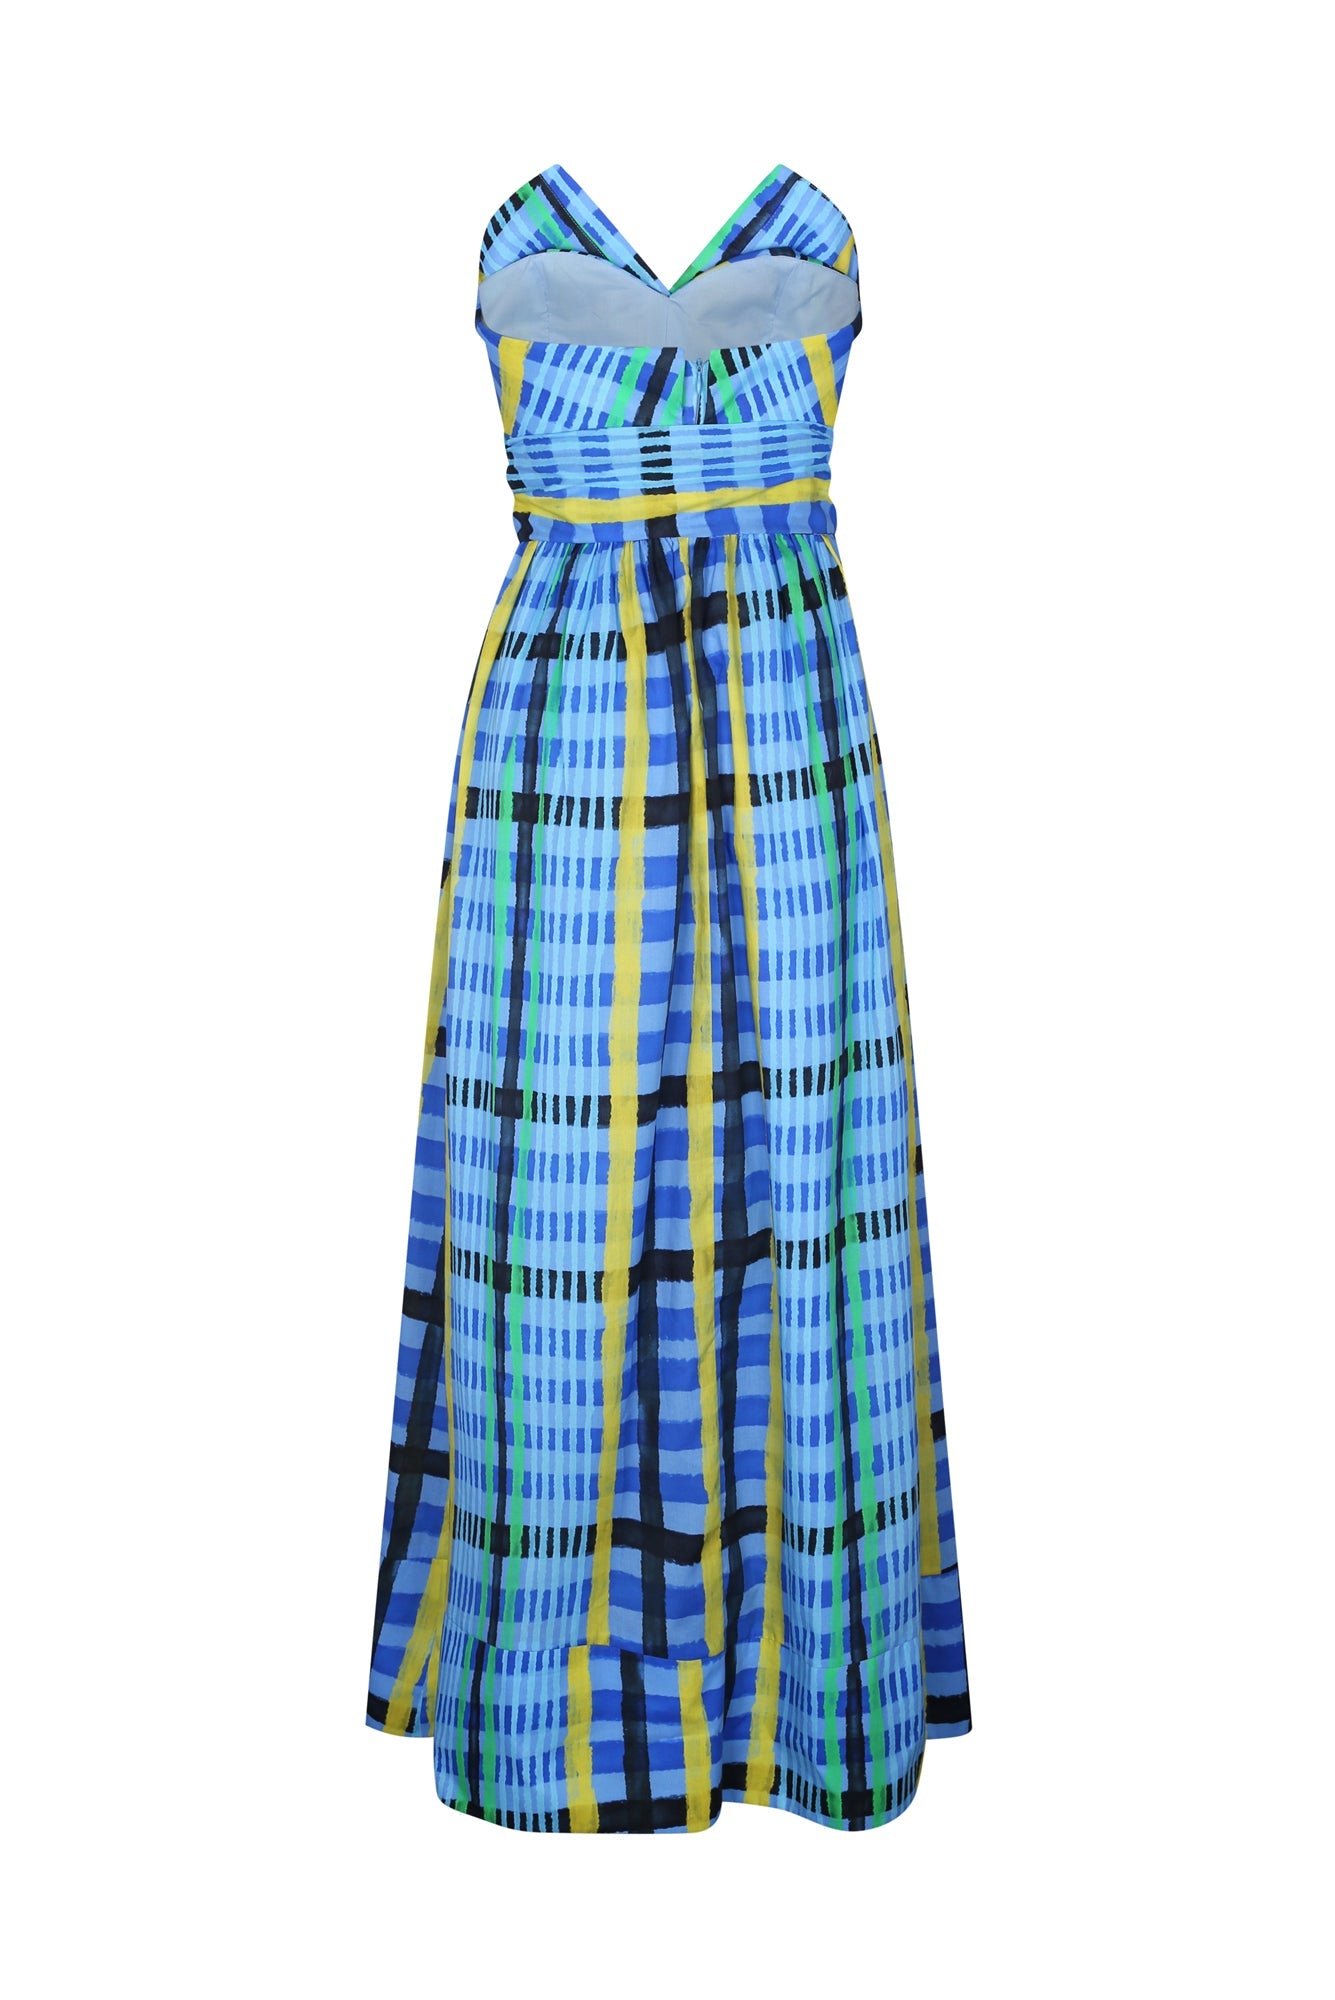 Charro Dress in Tartan Charra Azul Print